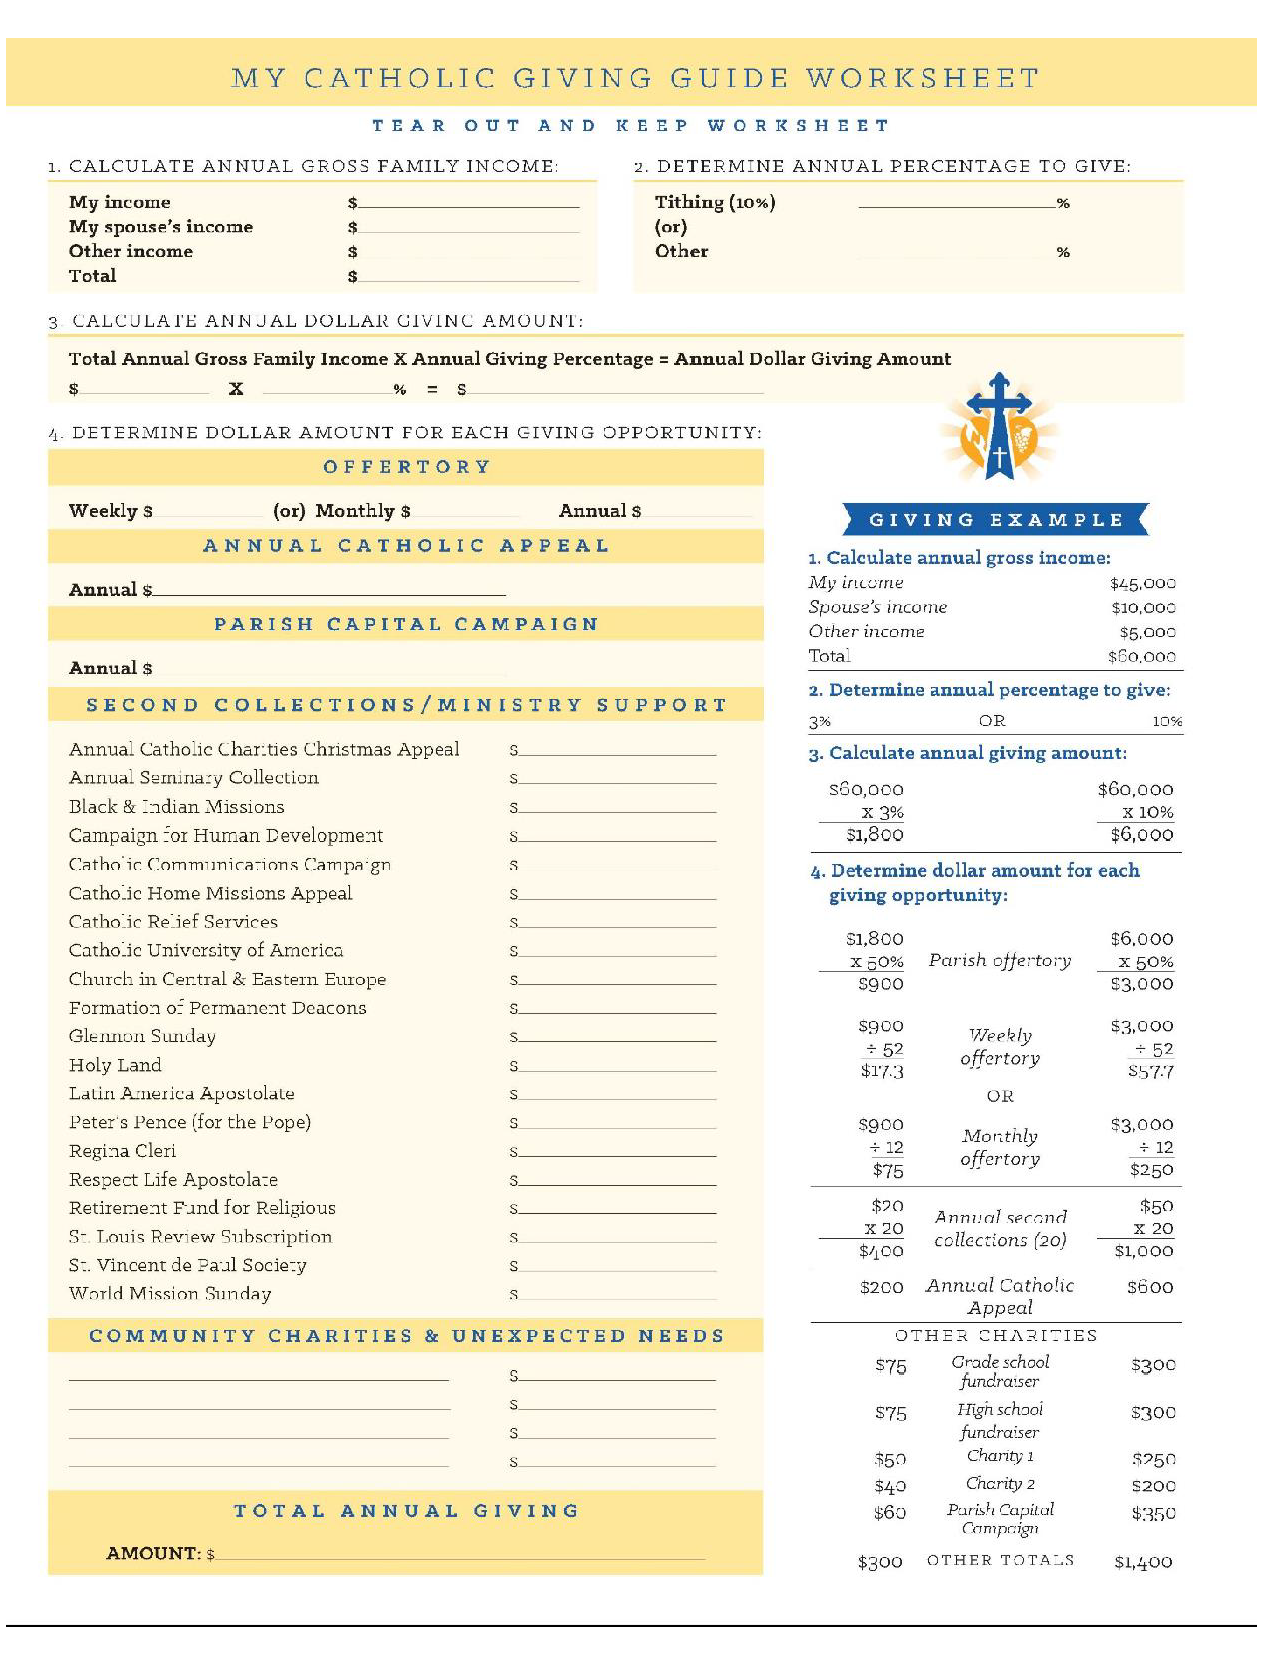 My Catholic Giving Guide Worksheet image (1)